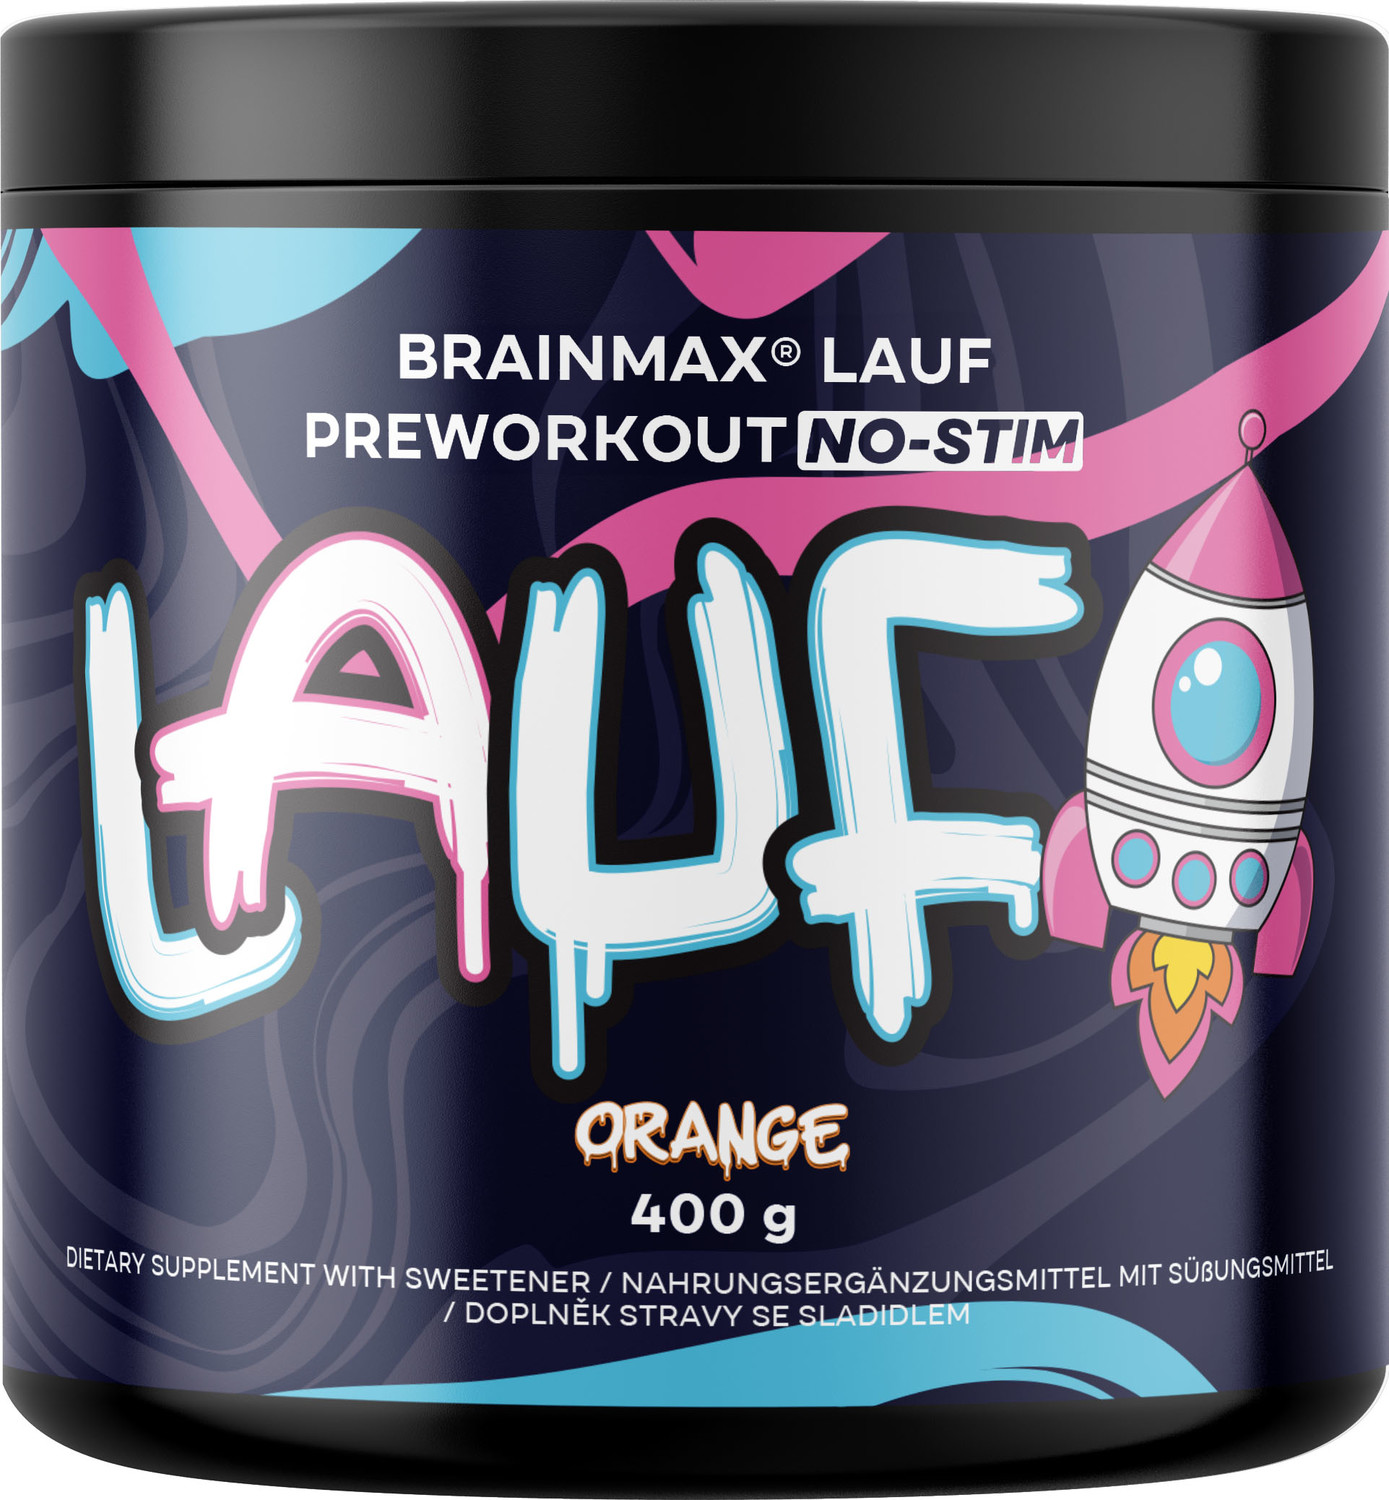 BrainMax Lauf Preworkout NO-STIM, Předtréninkovka pro podporu výkonu bez kofeinu, červený pomeranč, 400 g